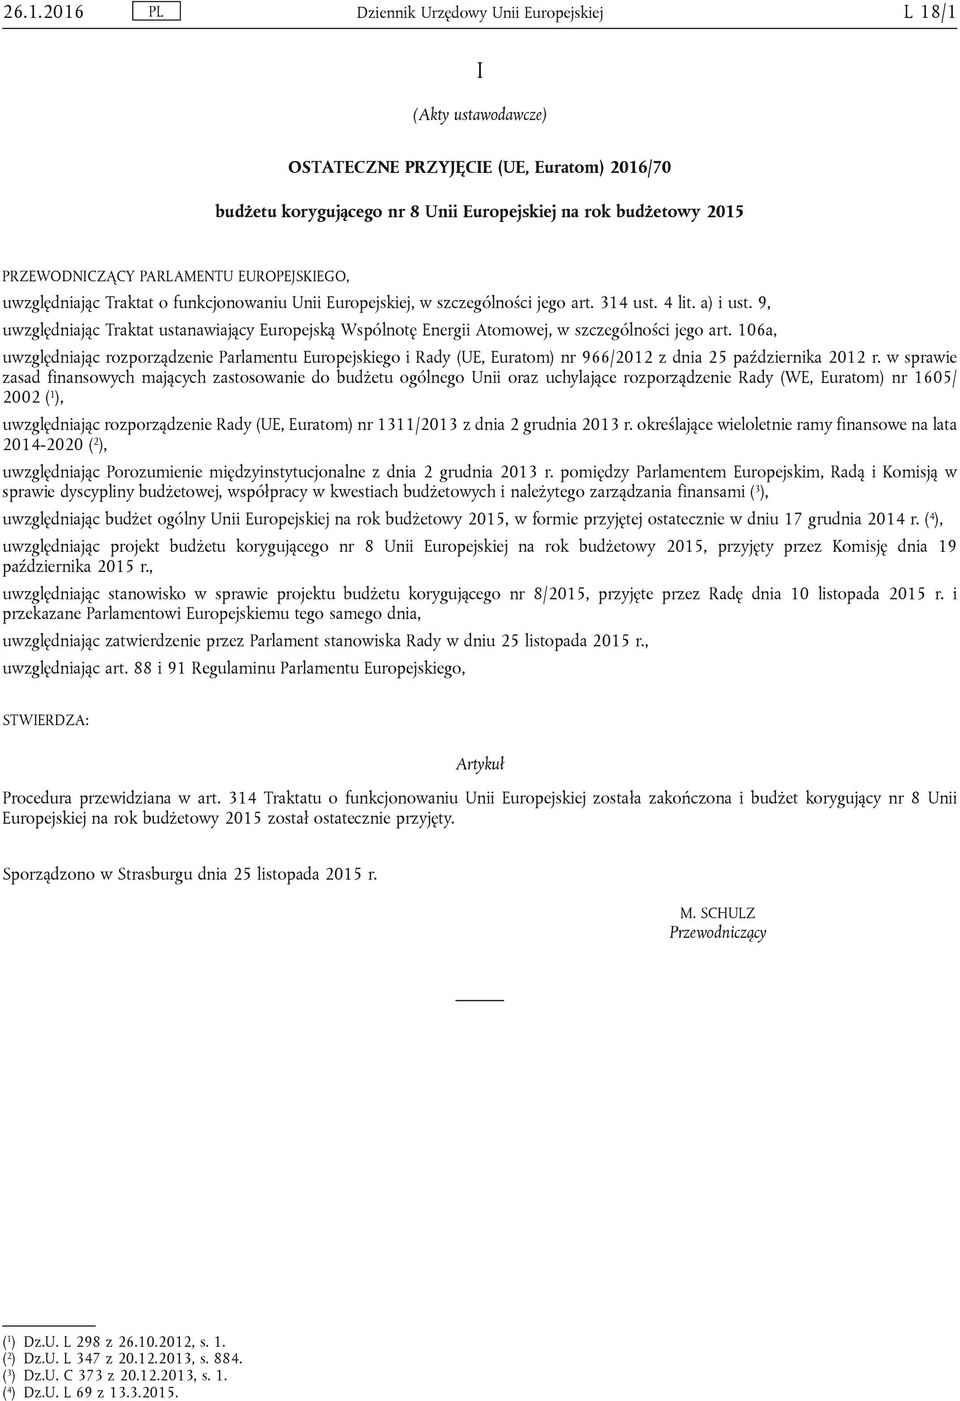 106a, uwzględniając rozporządzenie Parlamentu Europejskiego i Rady (UE, Euratom) nr 966/2012 z dnia 25 października 2012 r.